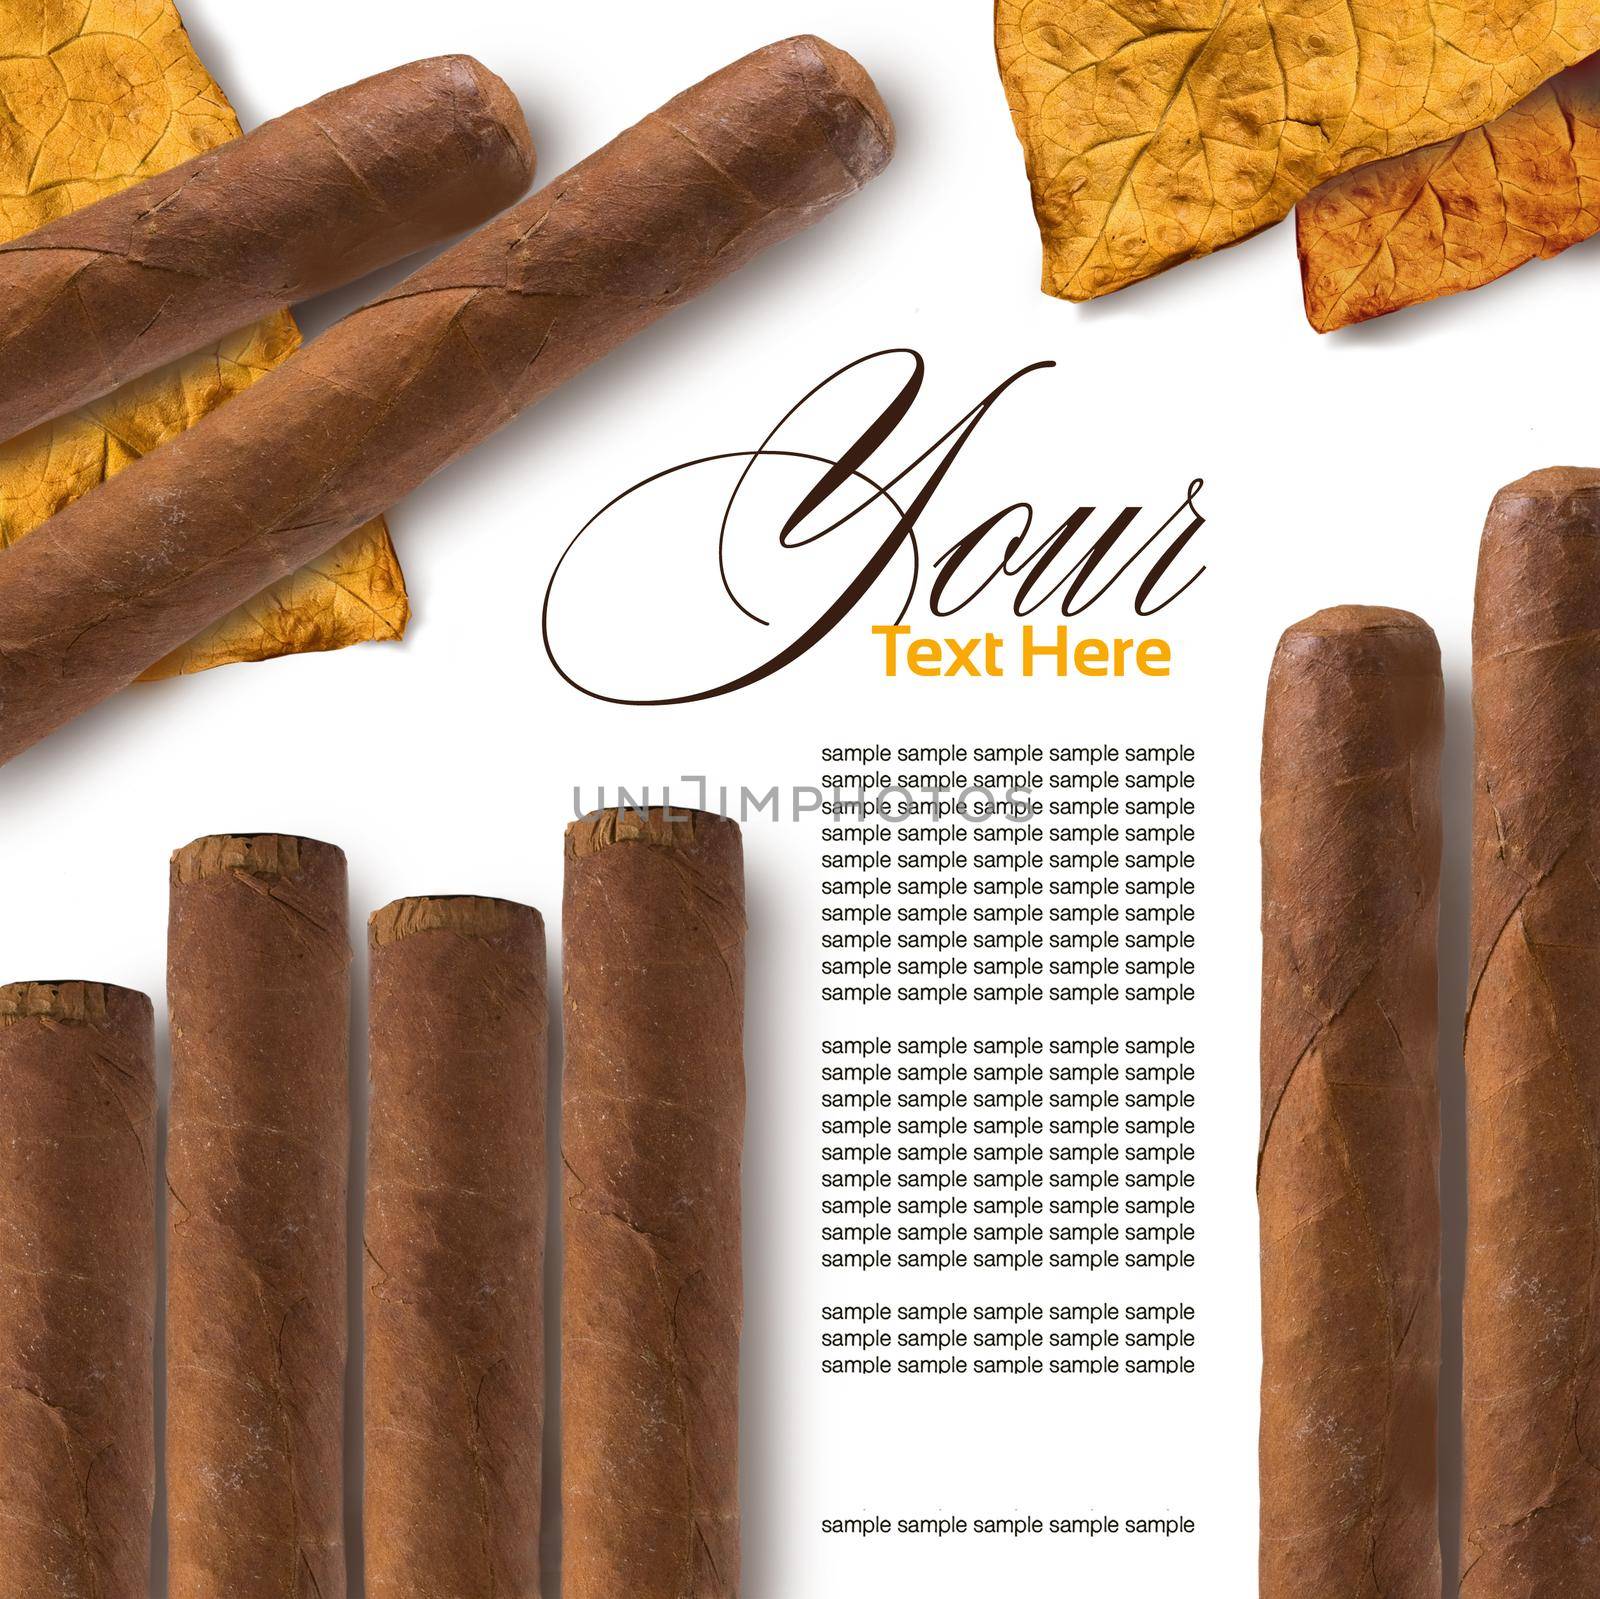 Cigars by kornienko